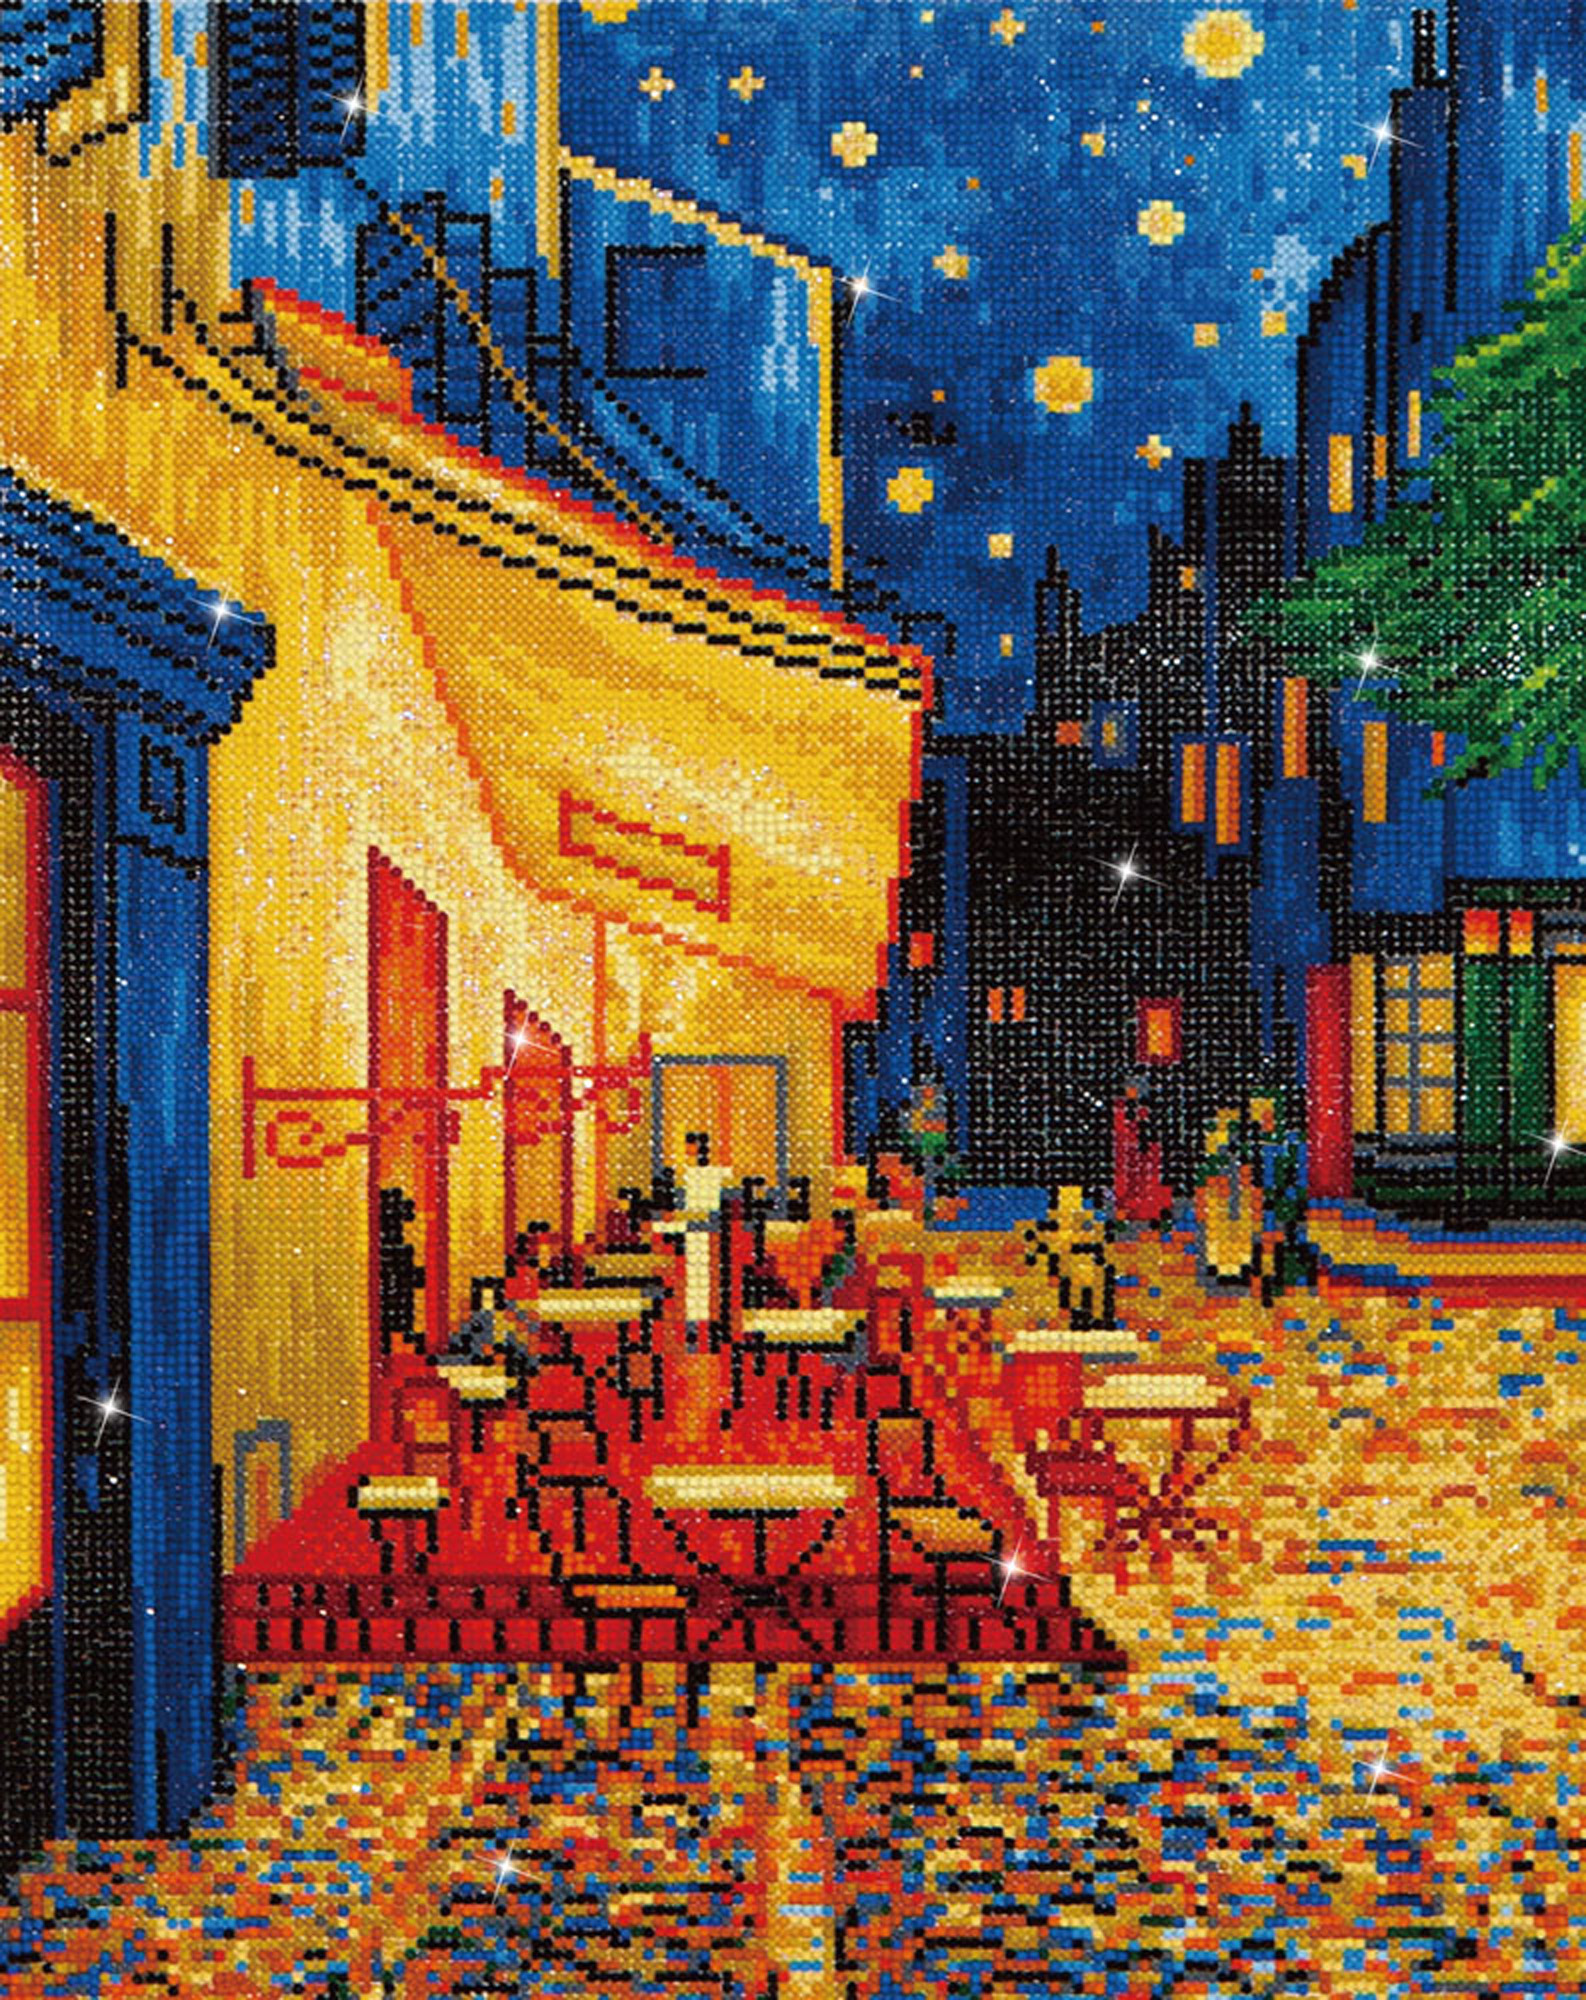 Tablou cu diamante – Terasa cafenelei noaptea (Van Gogh), 52 x 42 cm edituradiana.ro imagine 2022